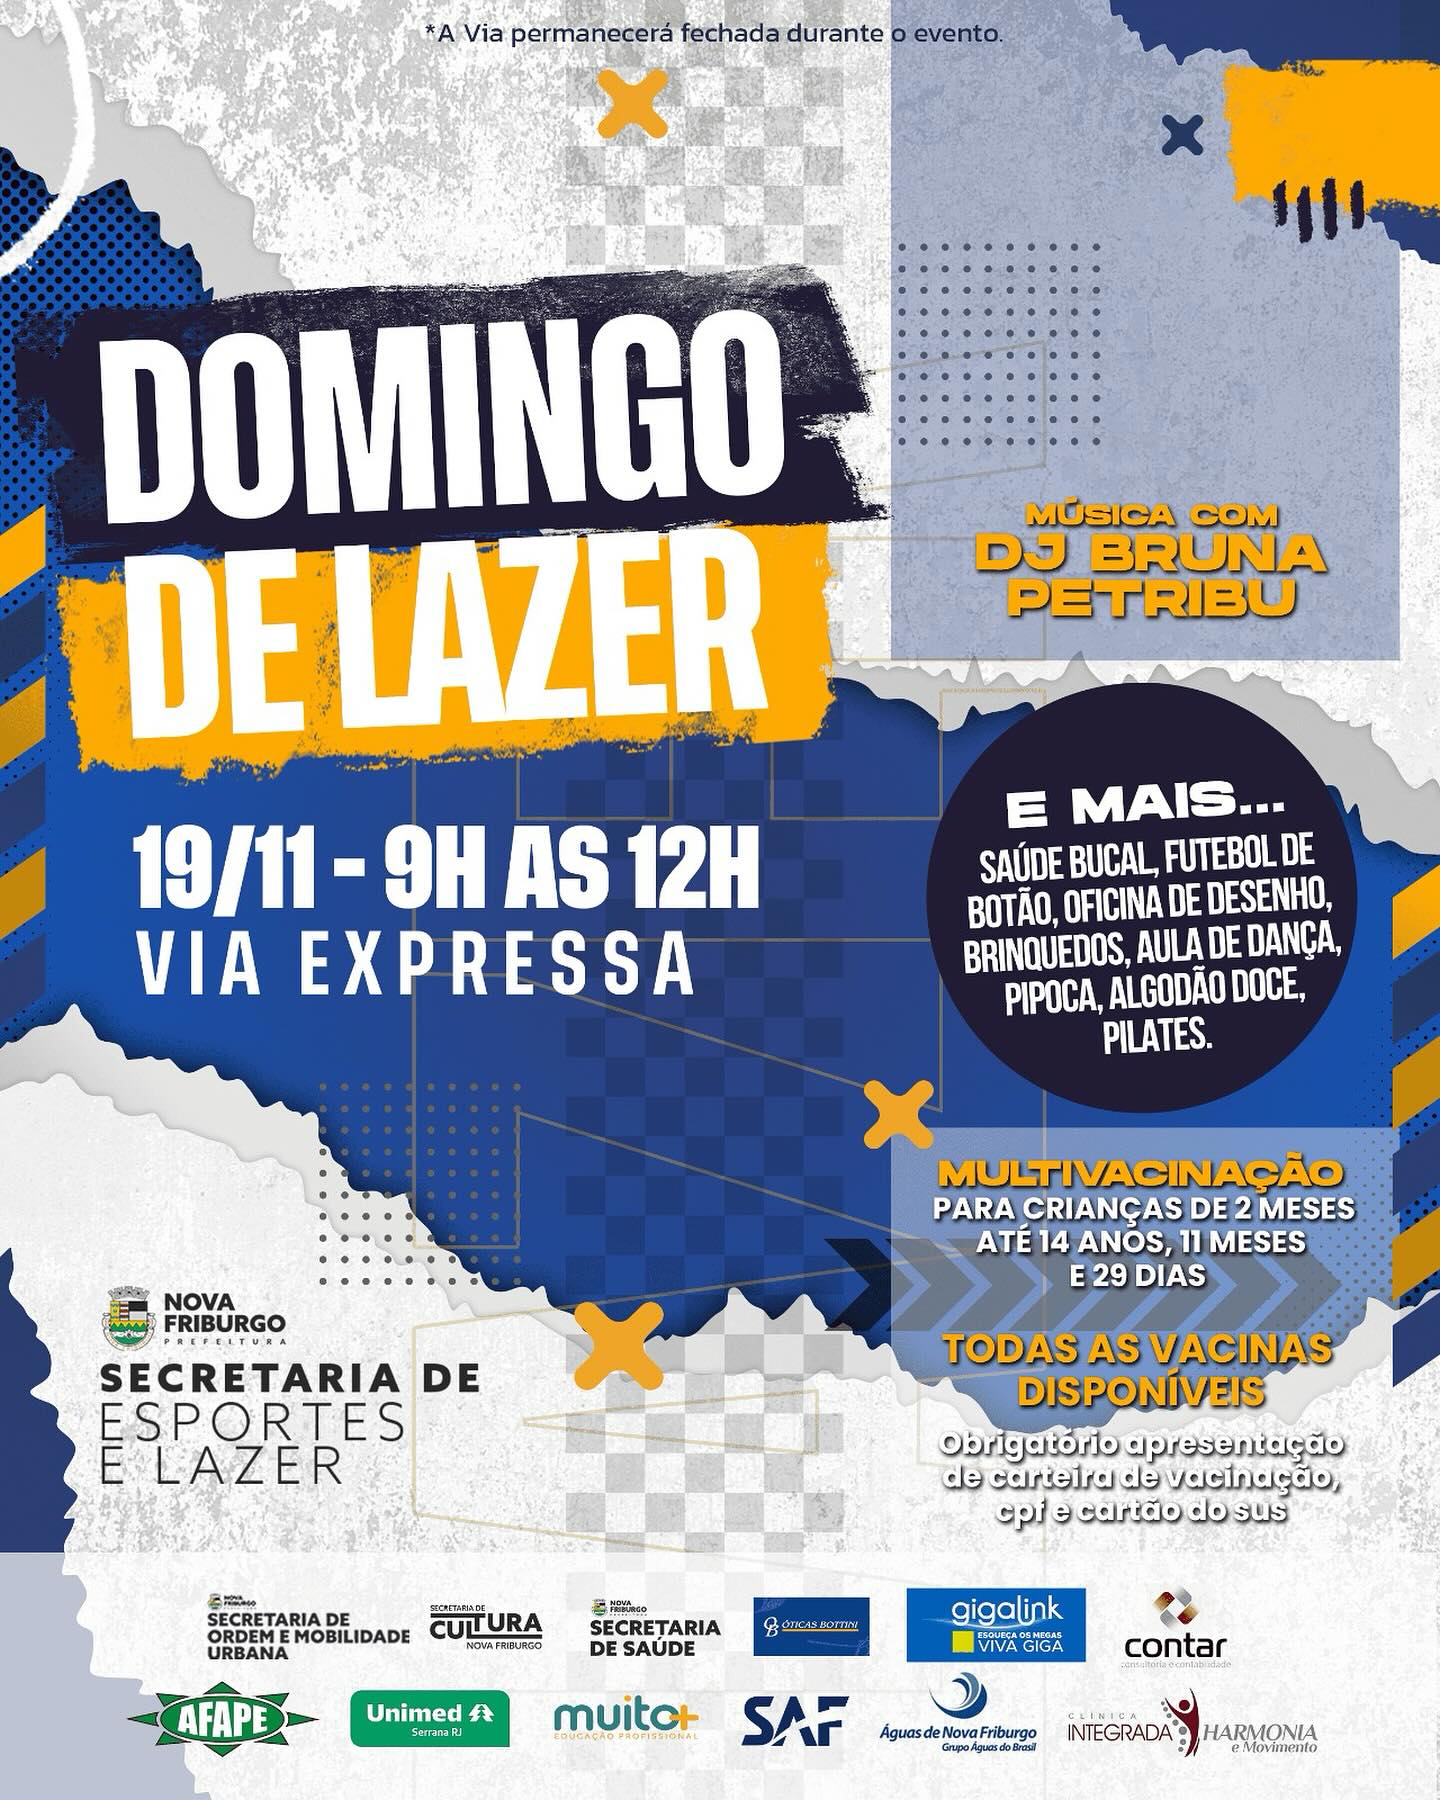 Edição de novembro do Domingo de Lazer será realizado neste domingo (19), em Nova Friburgo